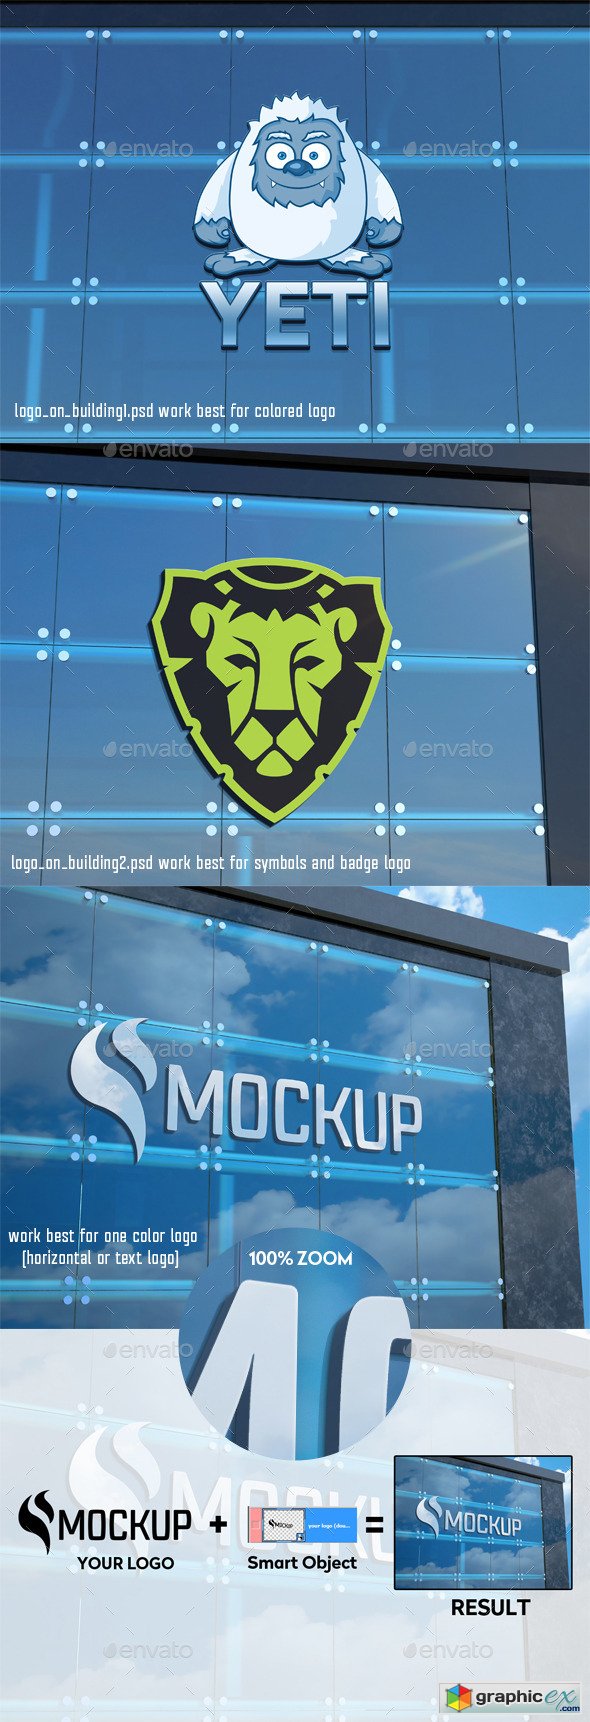 Logo on Building Mockup